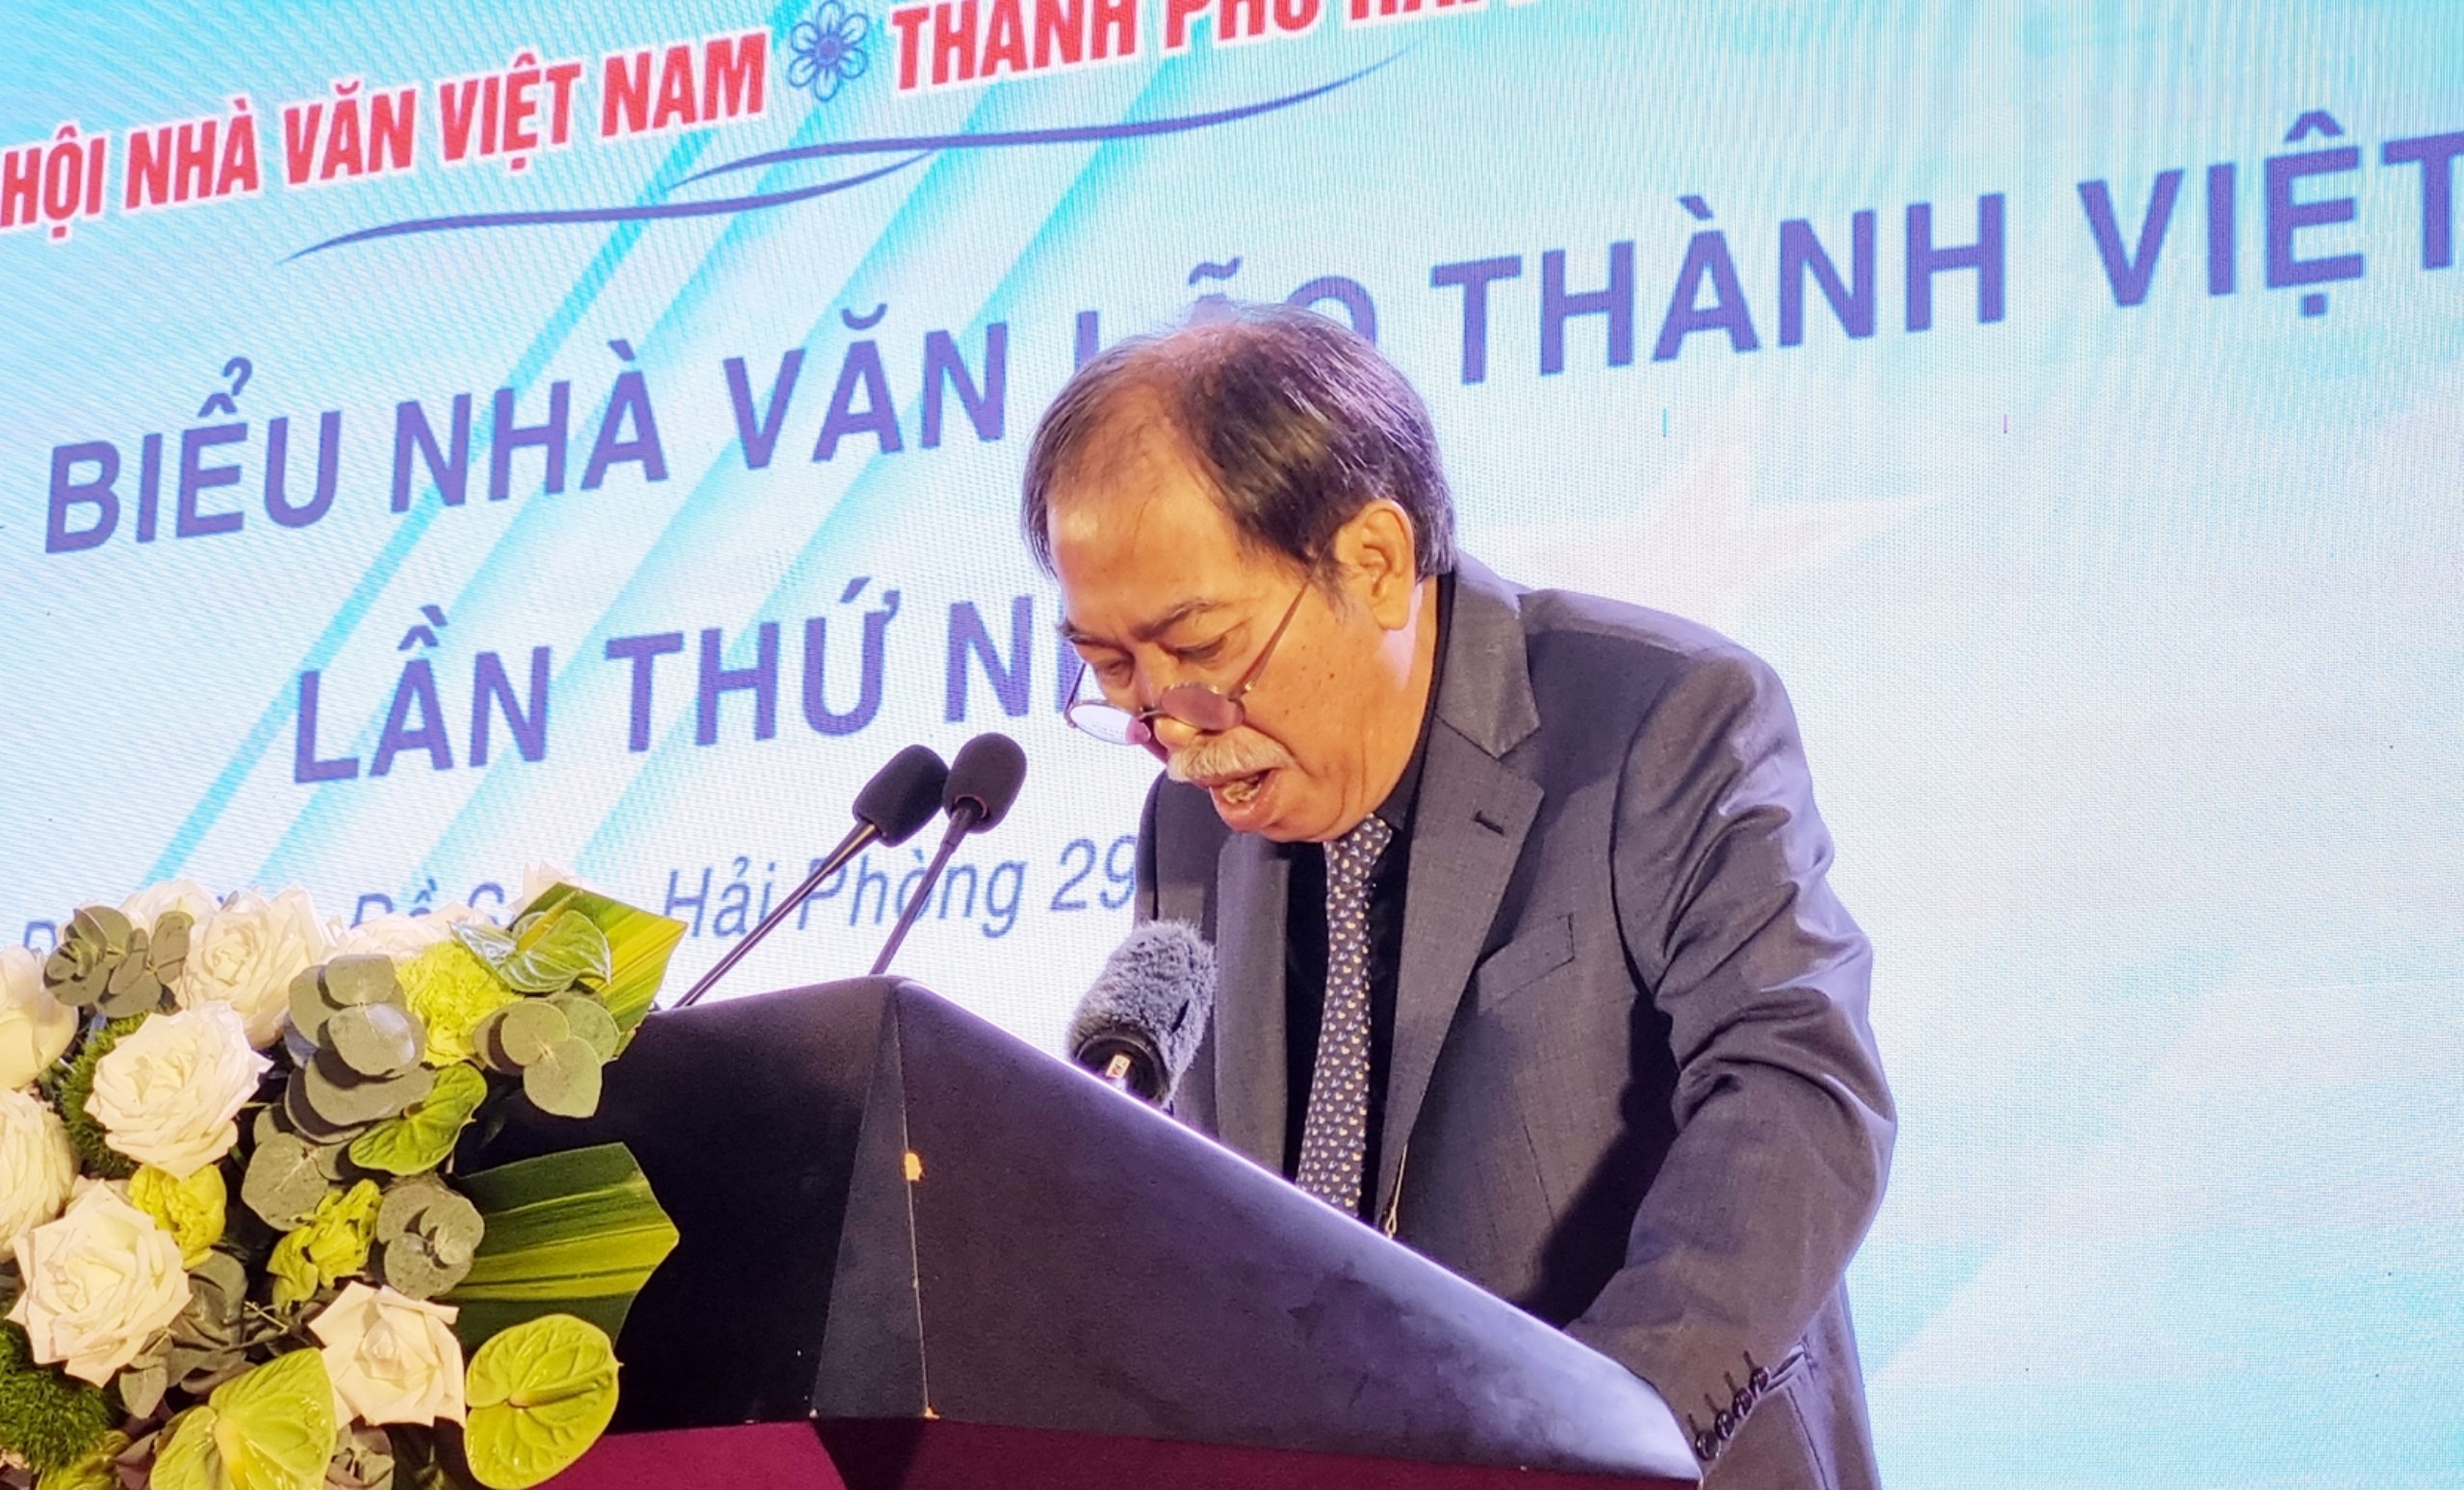 Dòng chảy kỳ vĩ của biển văn học Việt Nam - 2